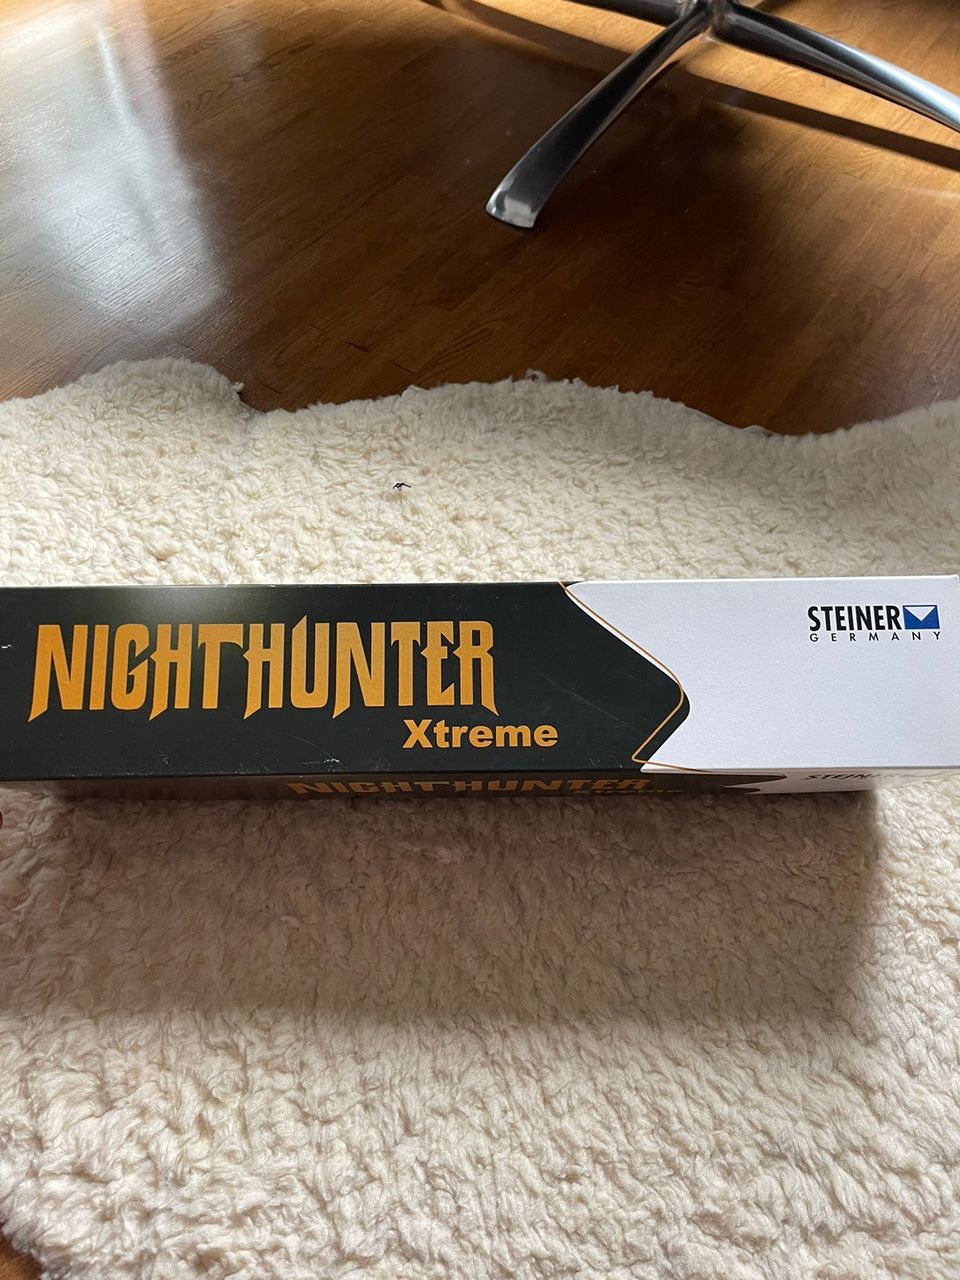 Steiner night hunter extreme 1.6-8x42